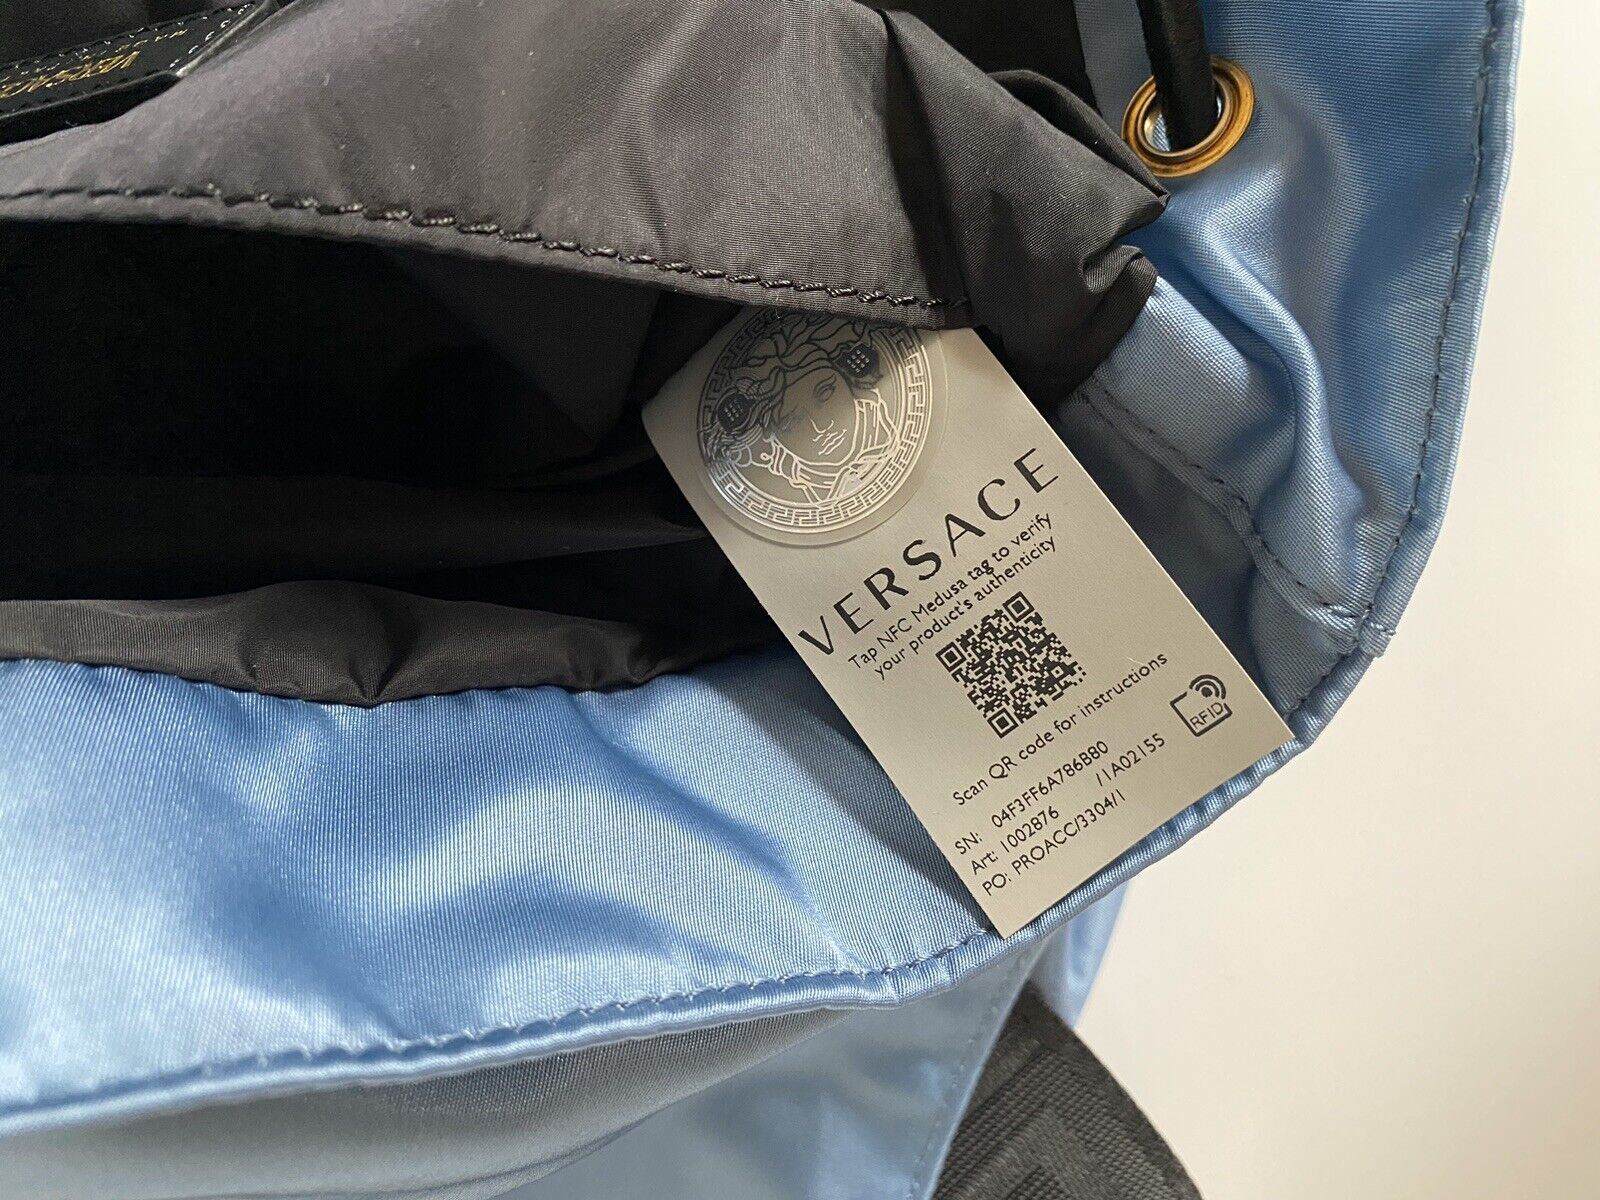 Neu mit Etikett: Versace Rucksack aus Nylon/Leder in Kornblumenblau, hergestellt in Italien, 1002876 1A02155 